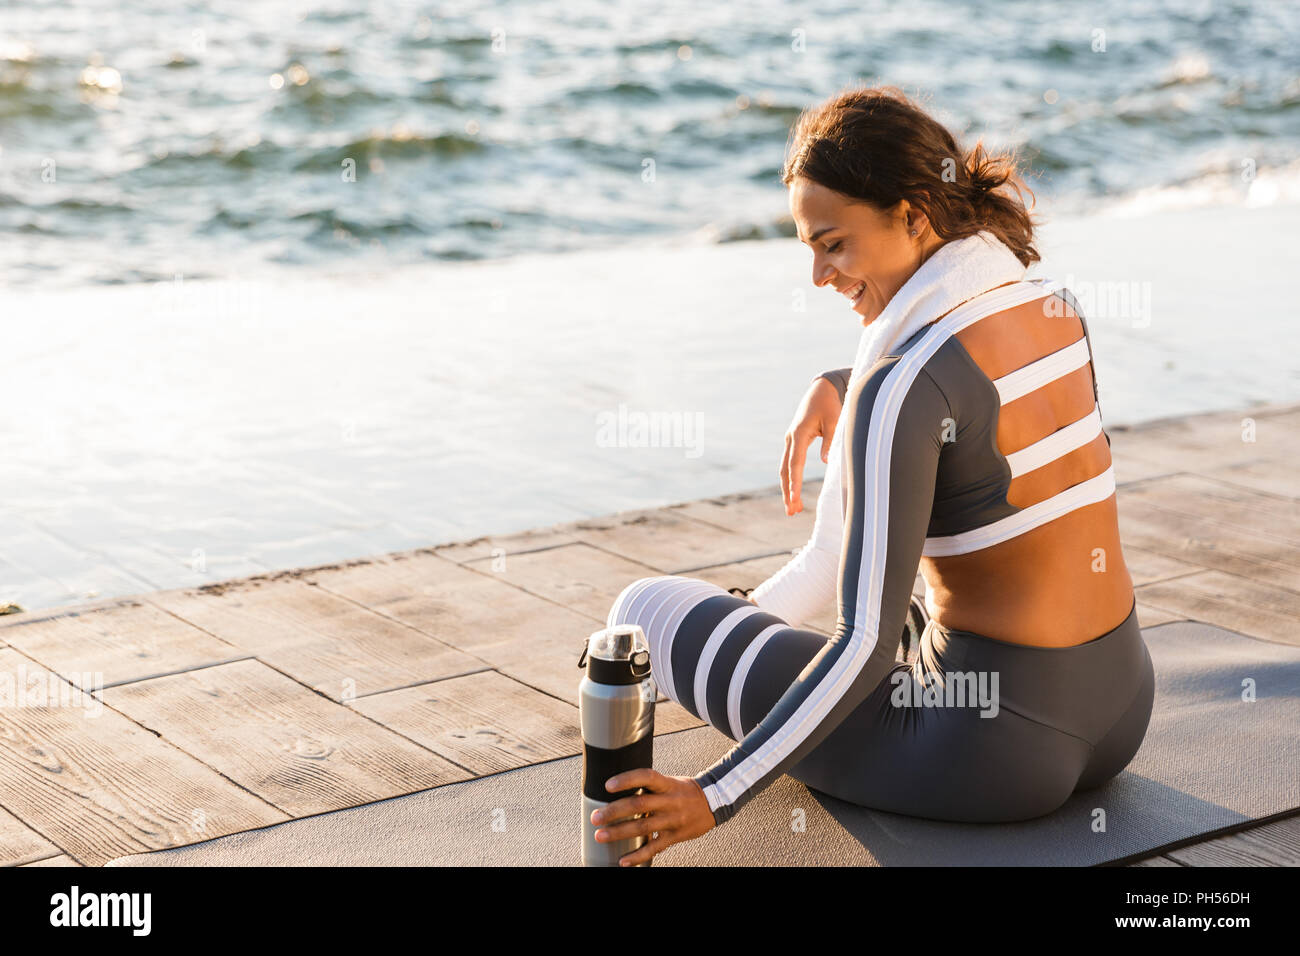 Immagine della giovane e bella donna fitness all'aperto sulla spiaggia hanno un resto seduta con asciugamani e acqua. Foto Stock